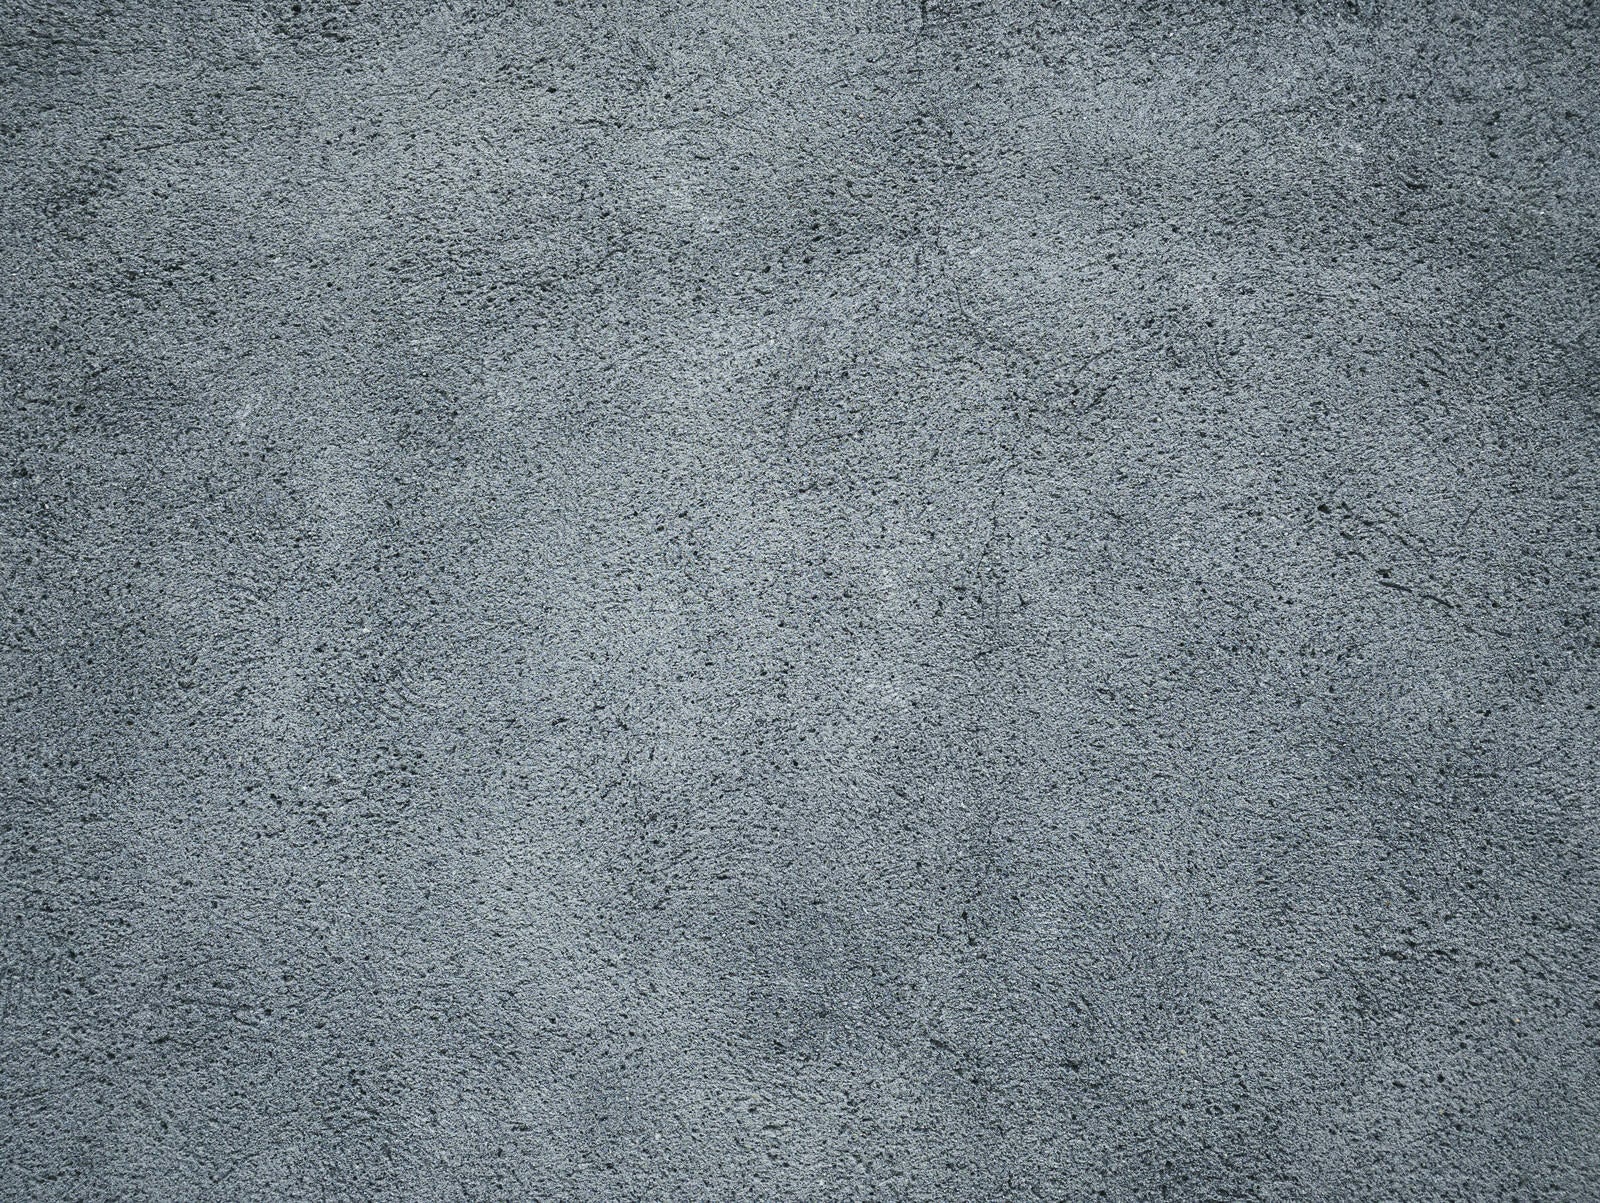 「コンクリートの表面の斑なシミ」の写真